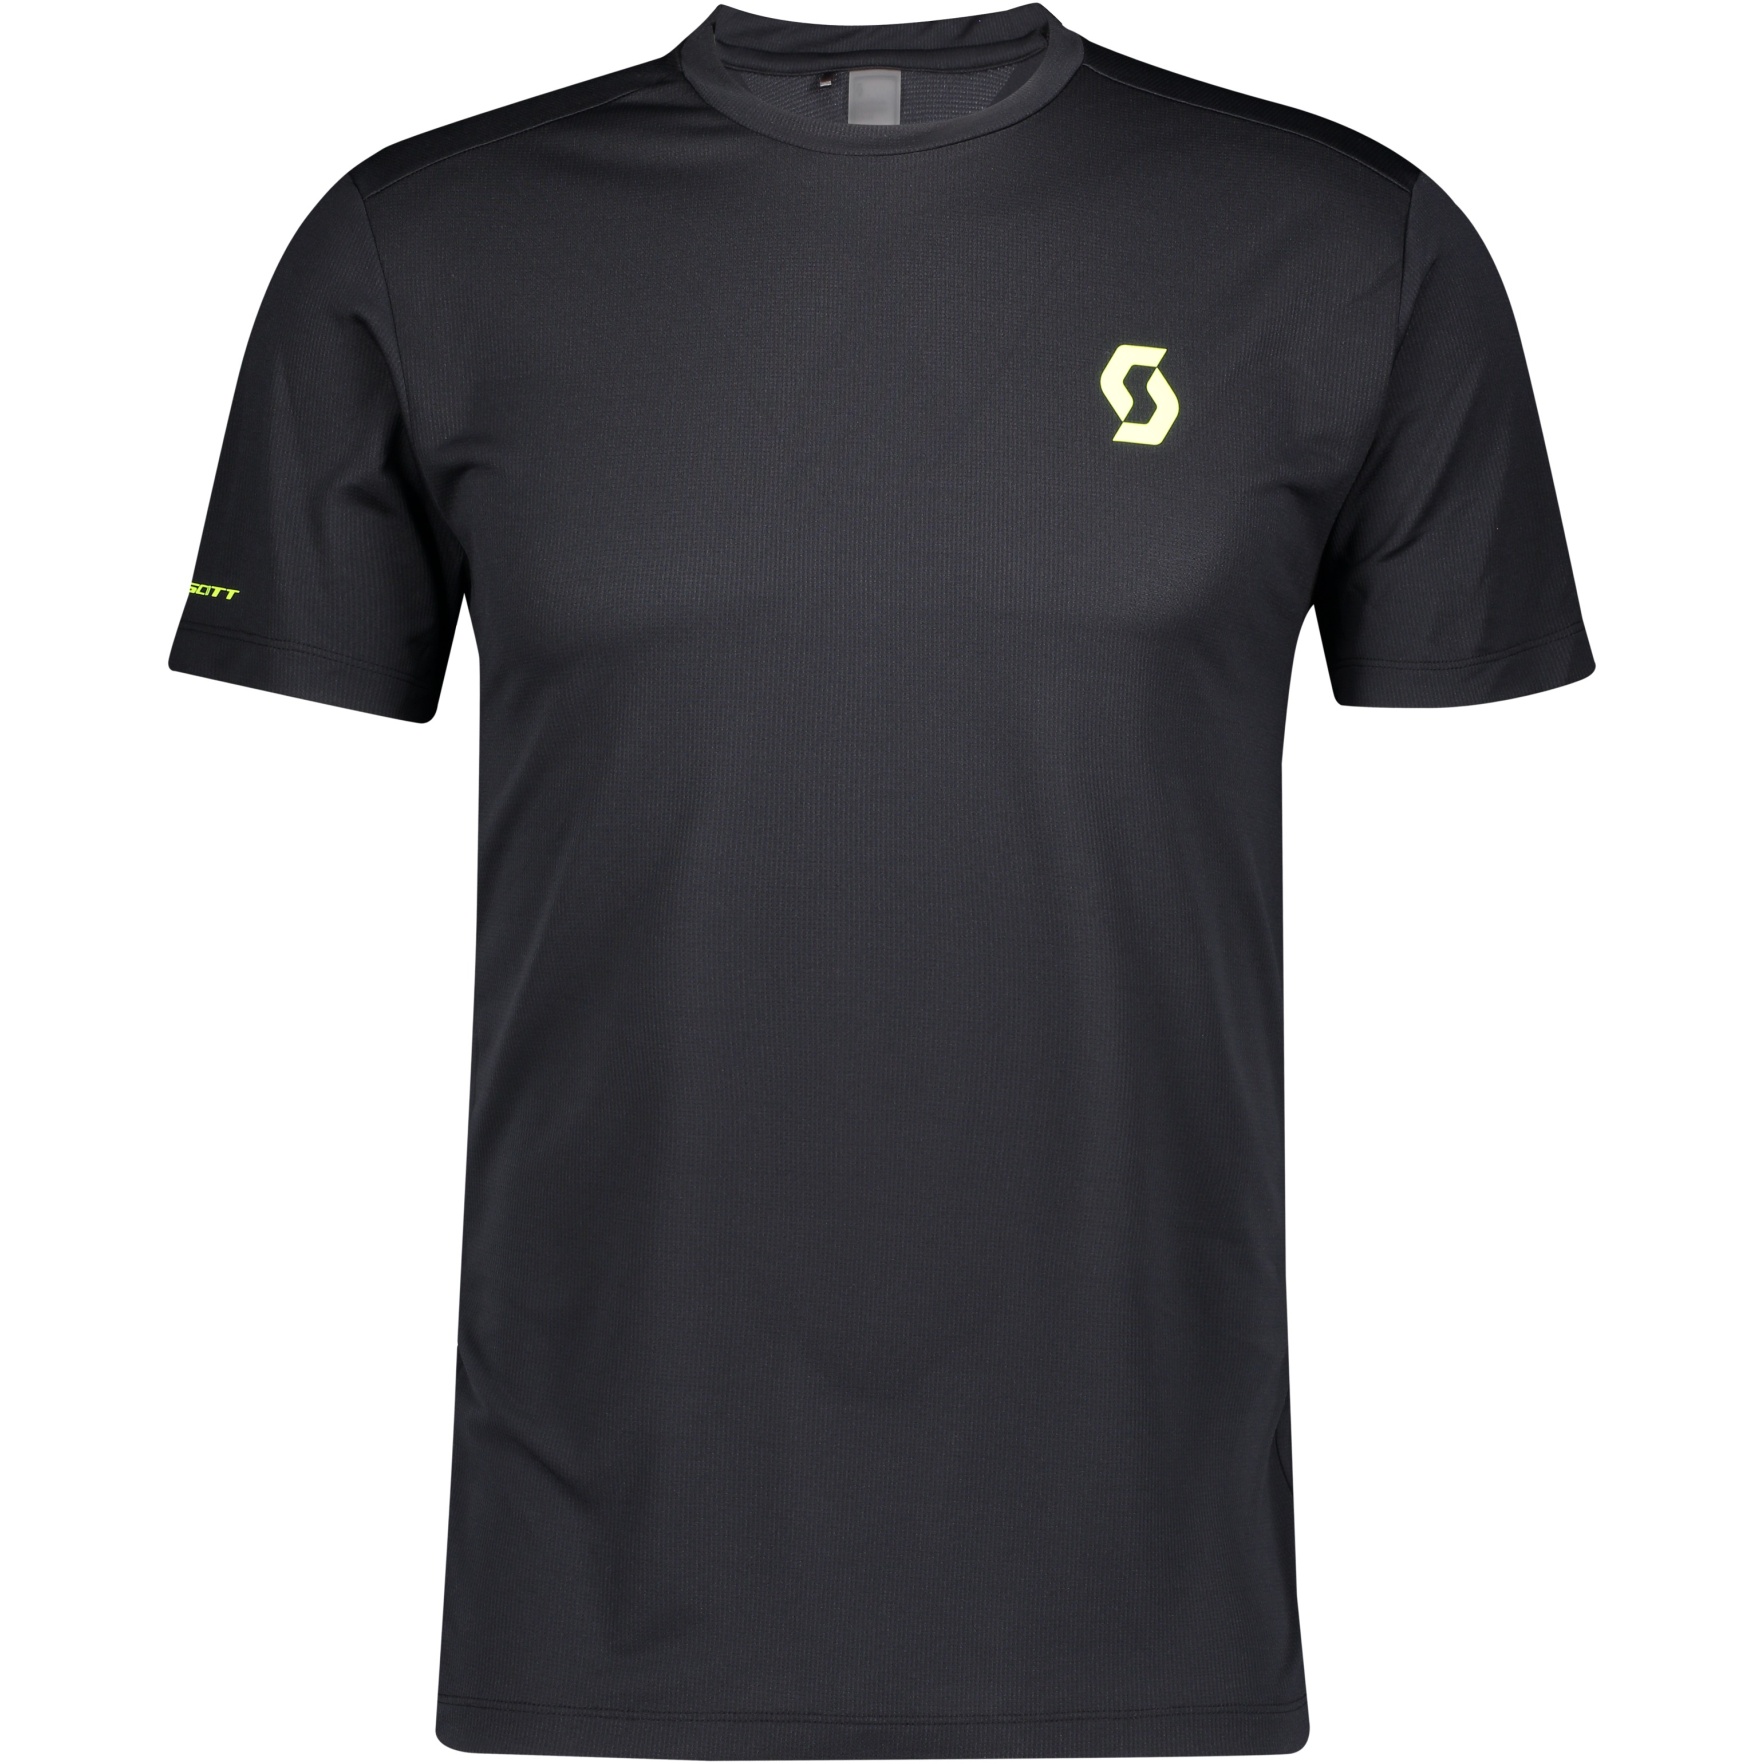 Produktbild von SCOTT RC Run Team S/SL Laufshirt - schwarz/gelb